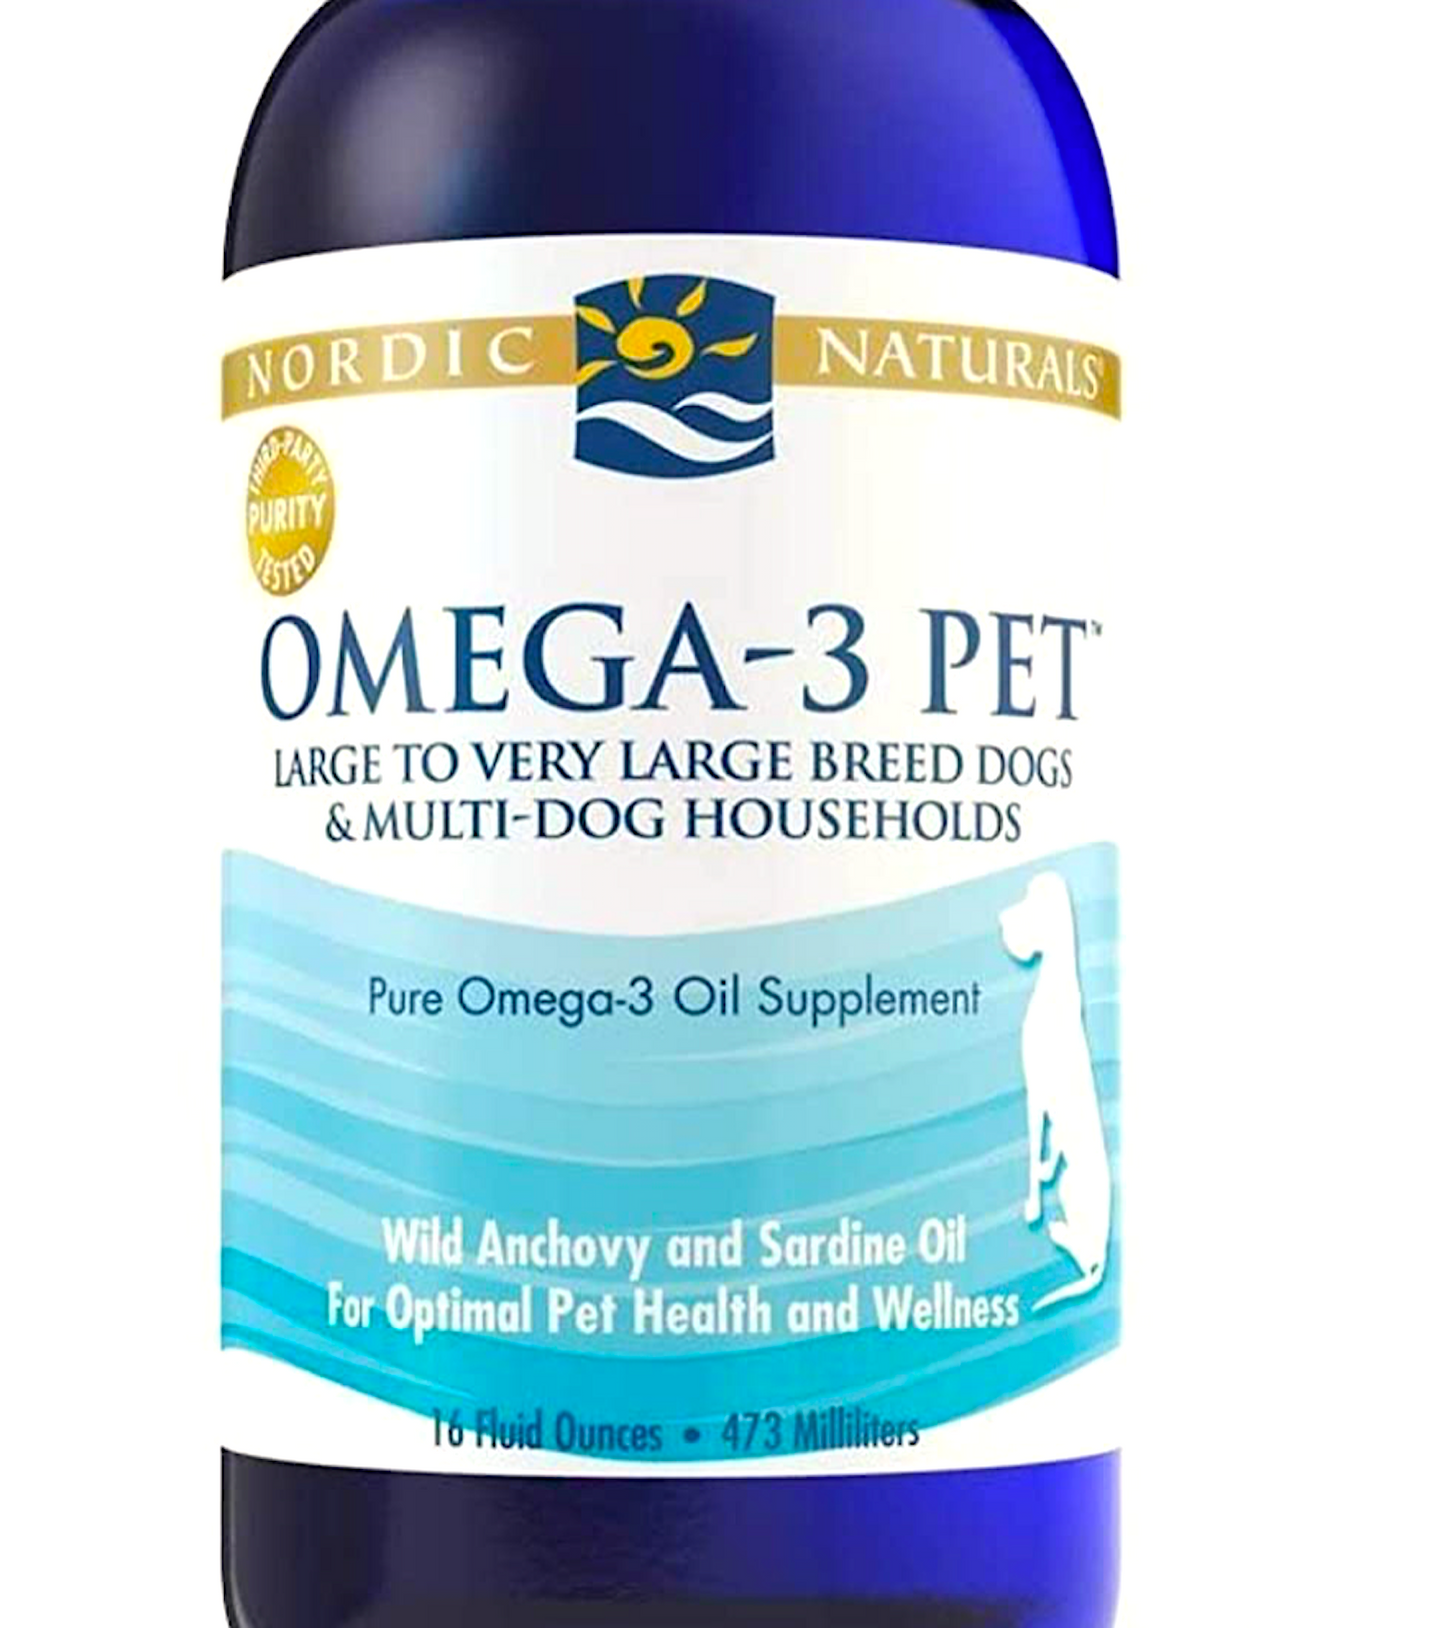 Omega-3 Pet (Nordic Naturals)